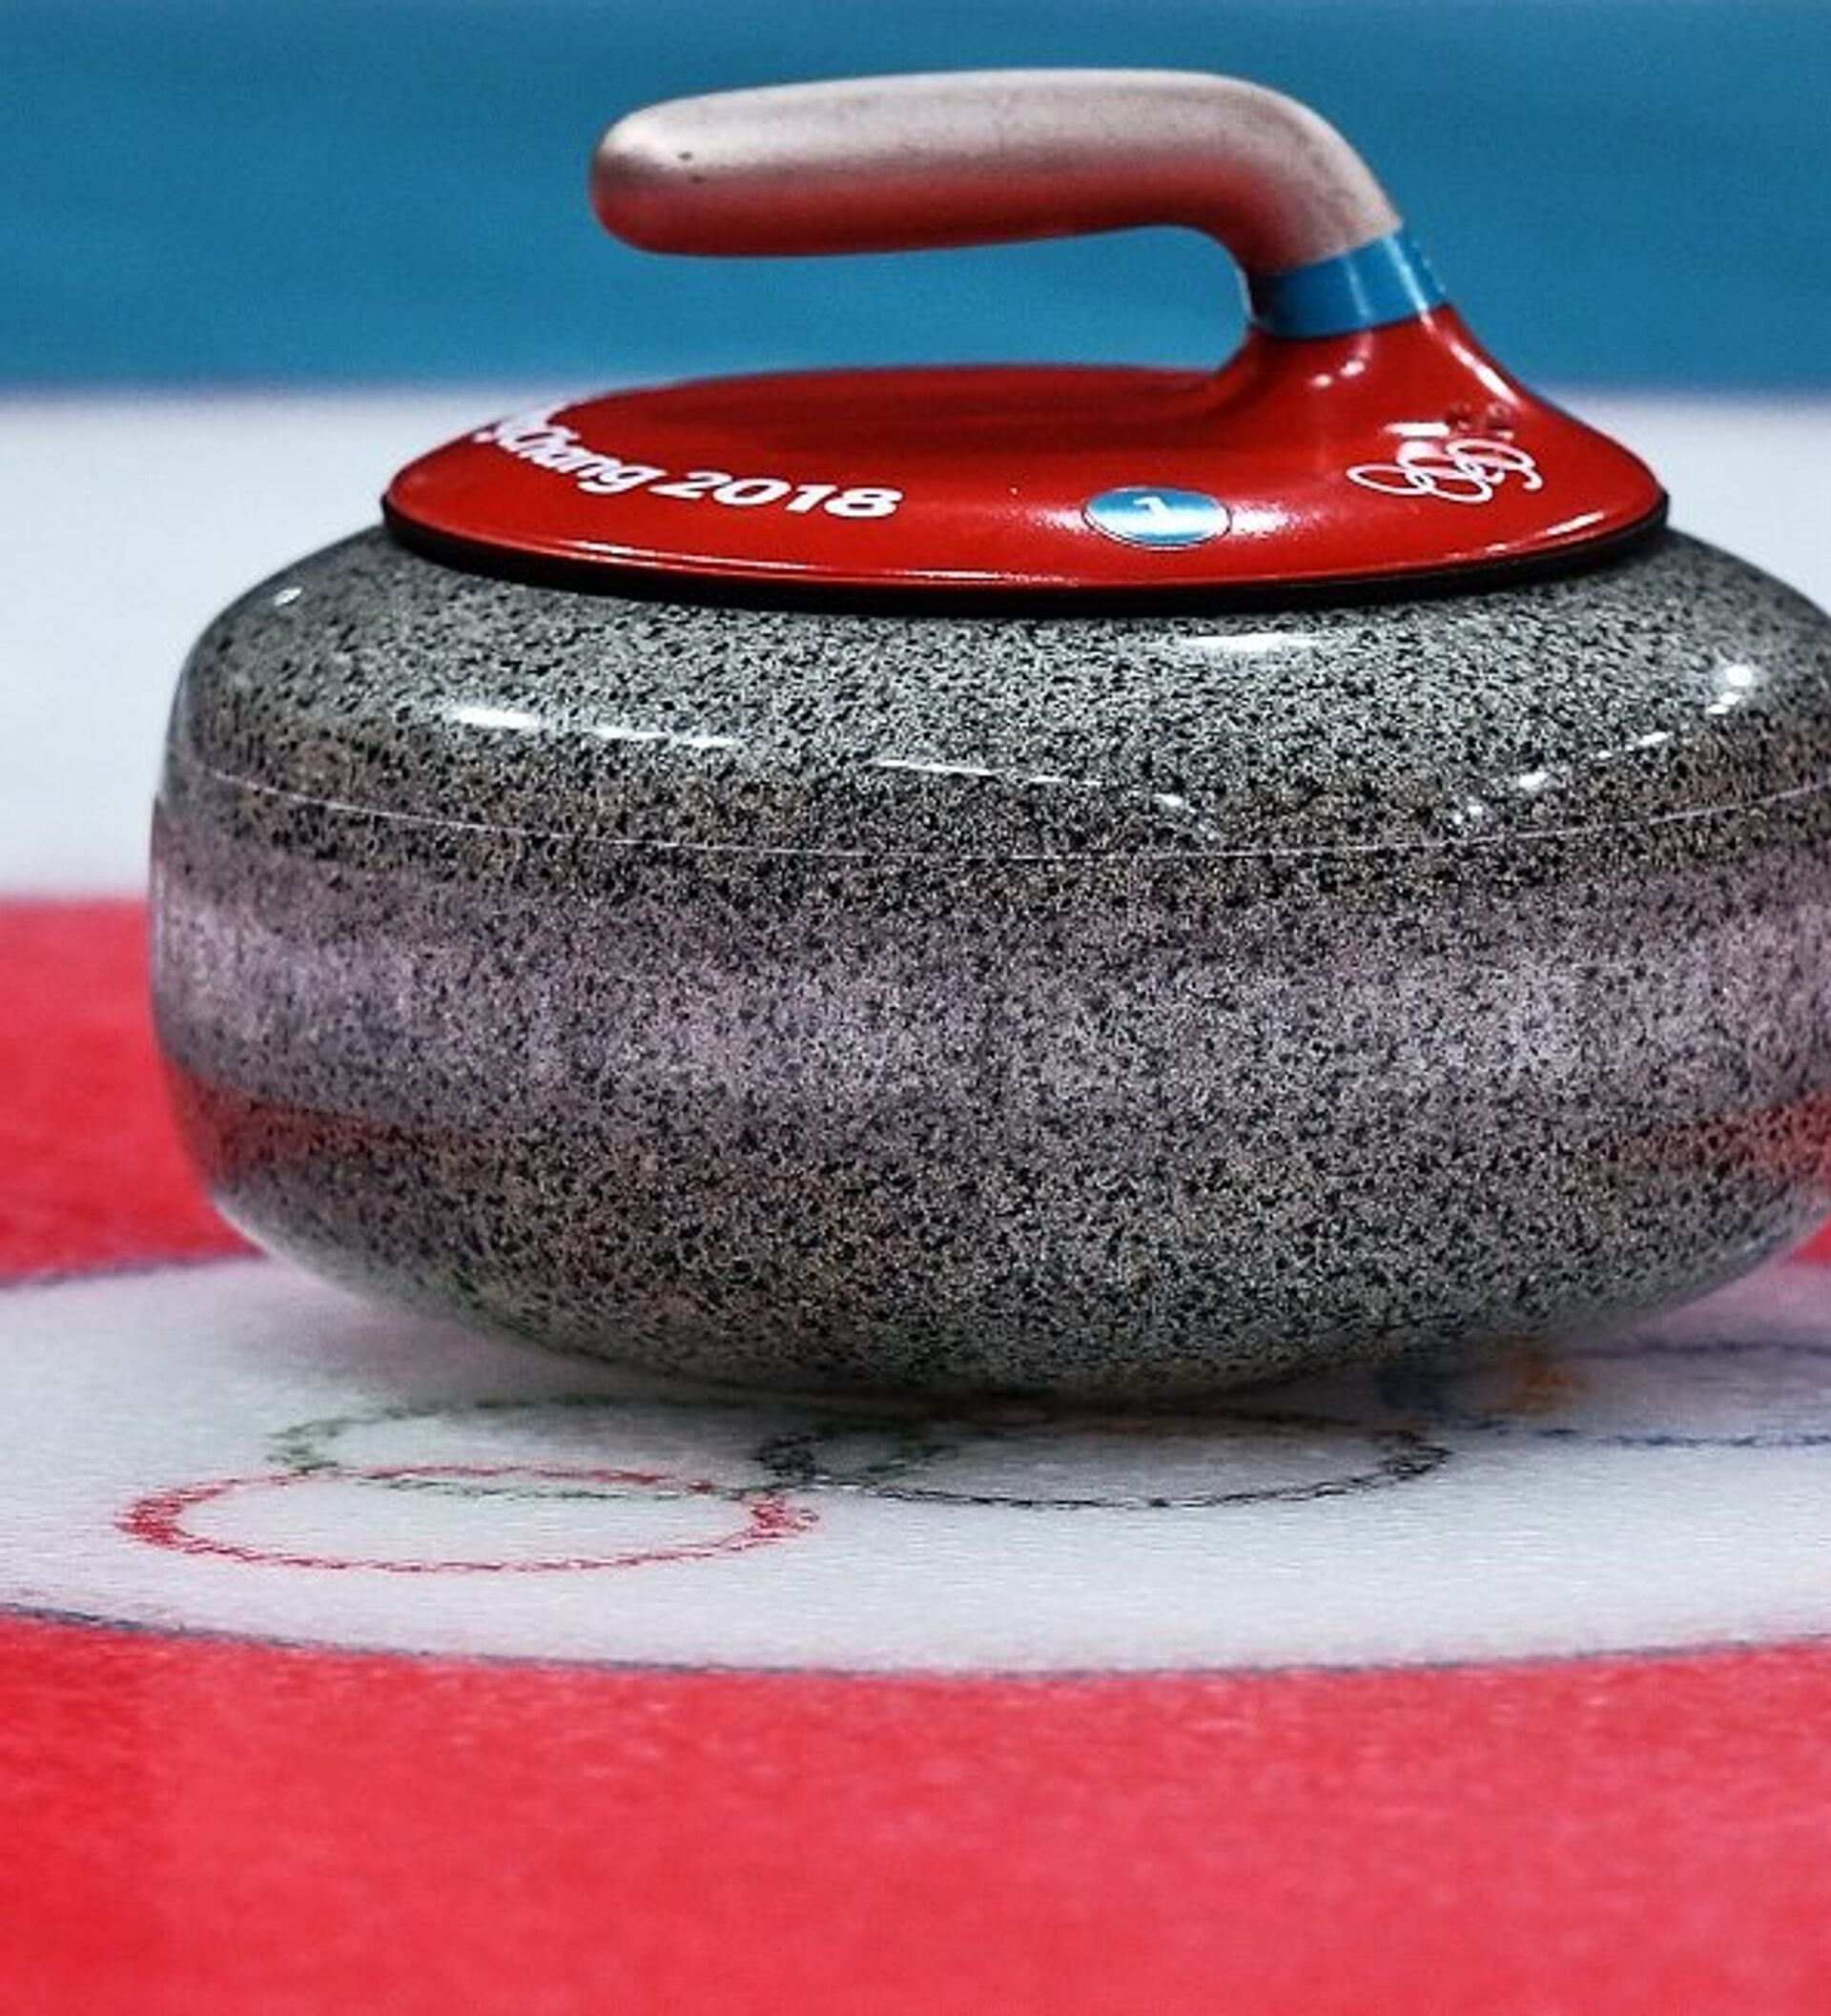 冰壶男子金牌赛：瑞典队胜英国队获得金牌 - 中国日报网